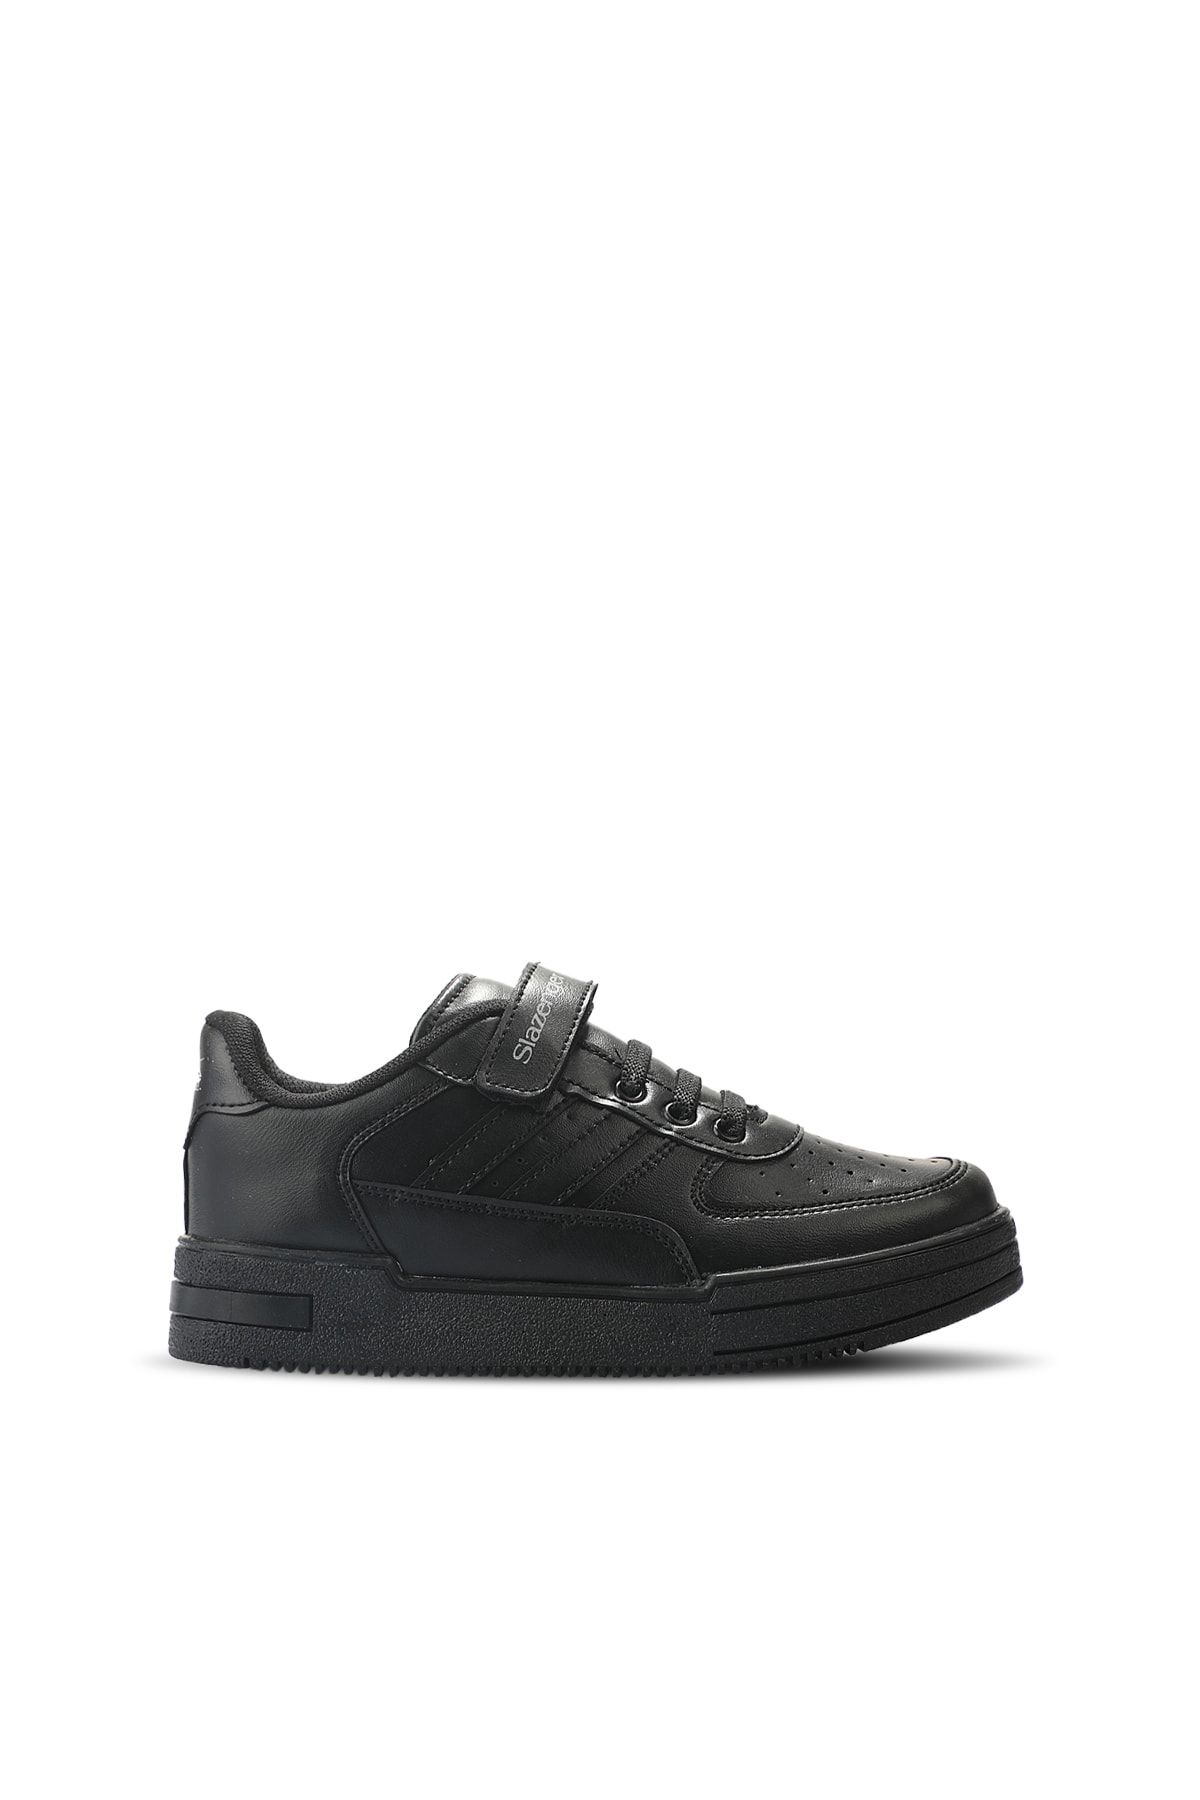 Slazenger Camp Sneaker Erkek Çocuk Ayakkabı Siyah / Siyah